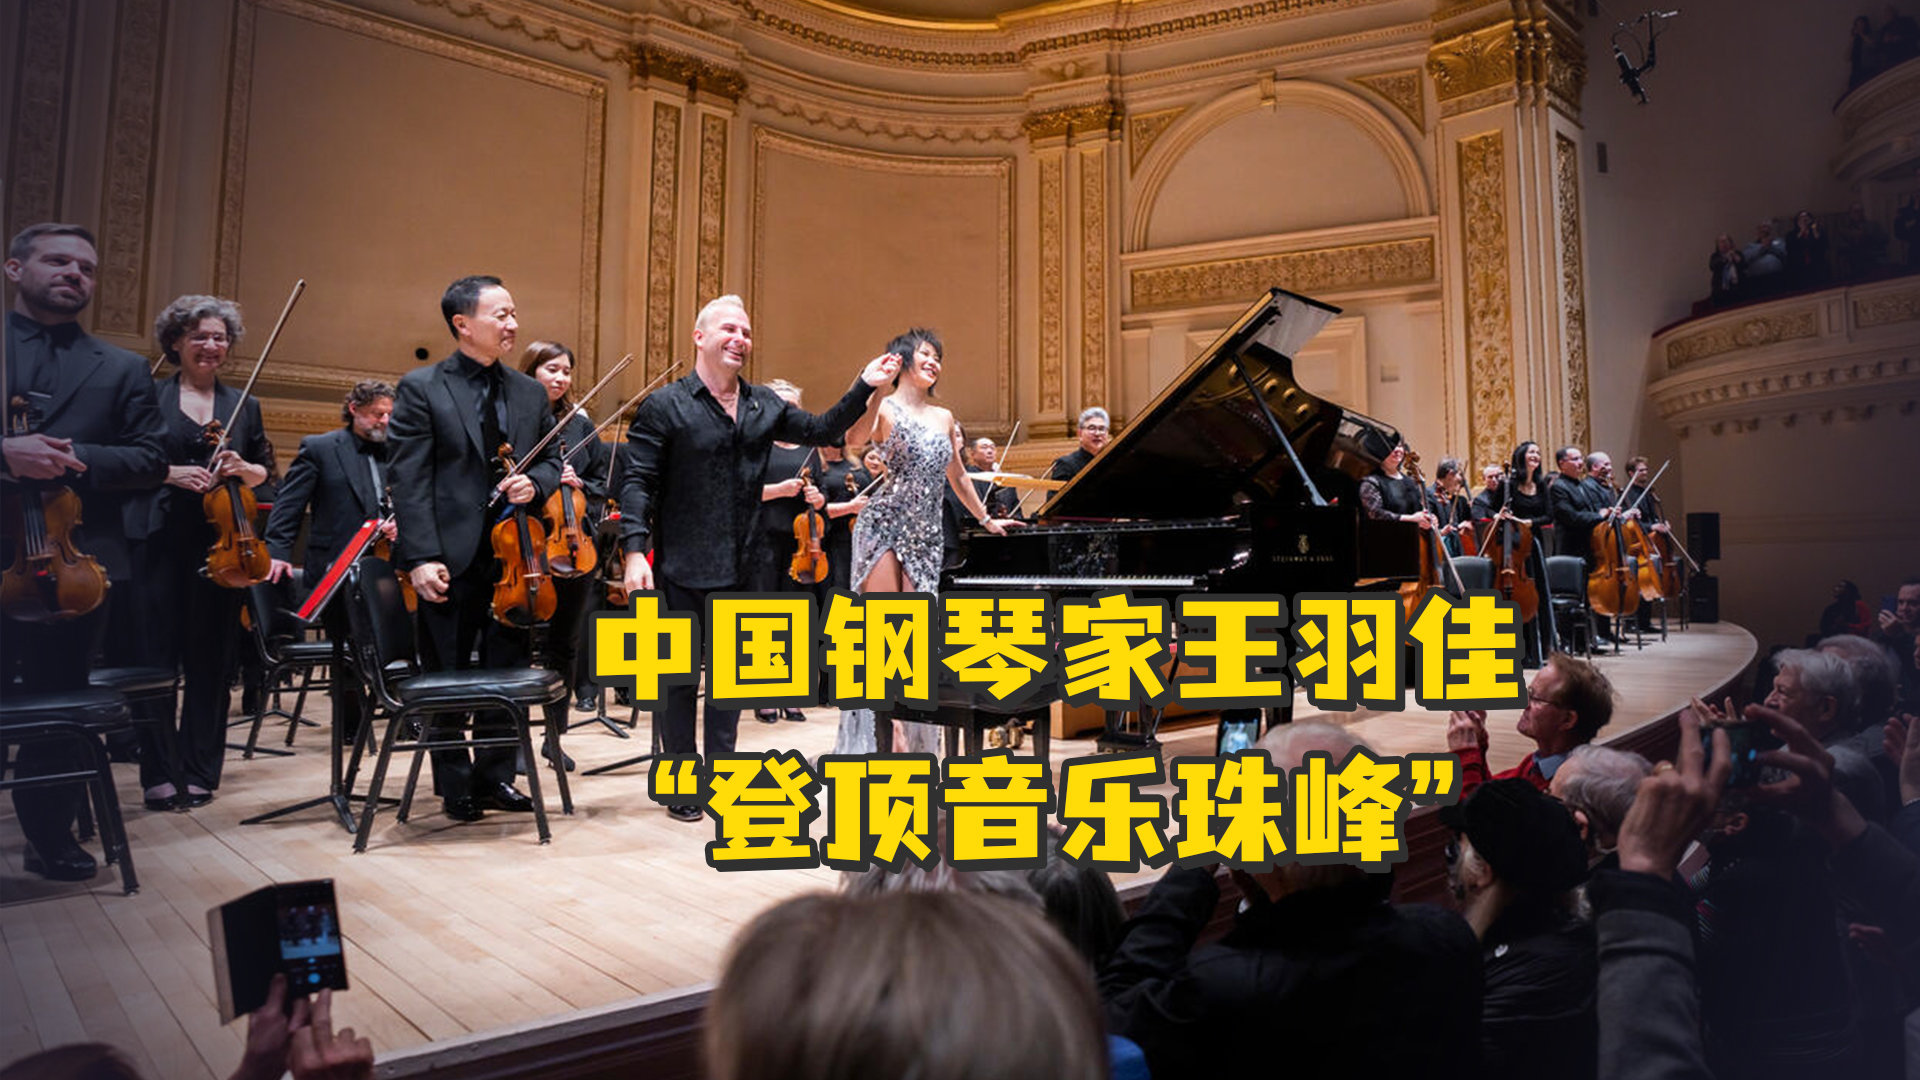 中国钢琴家王羽佳“登顶音乐珠峰”，指挥家雅尼克“跪服”